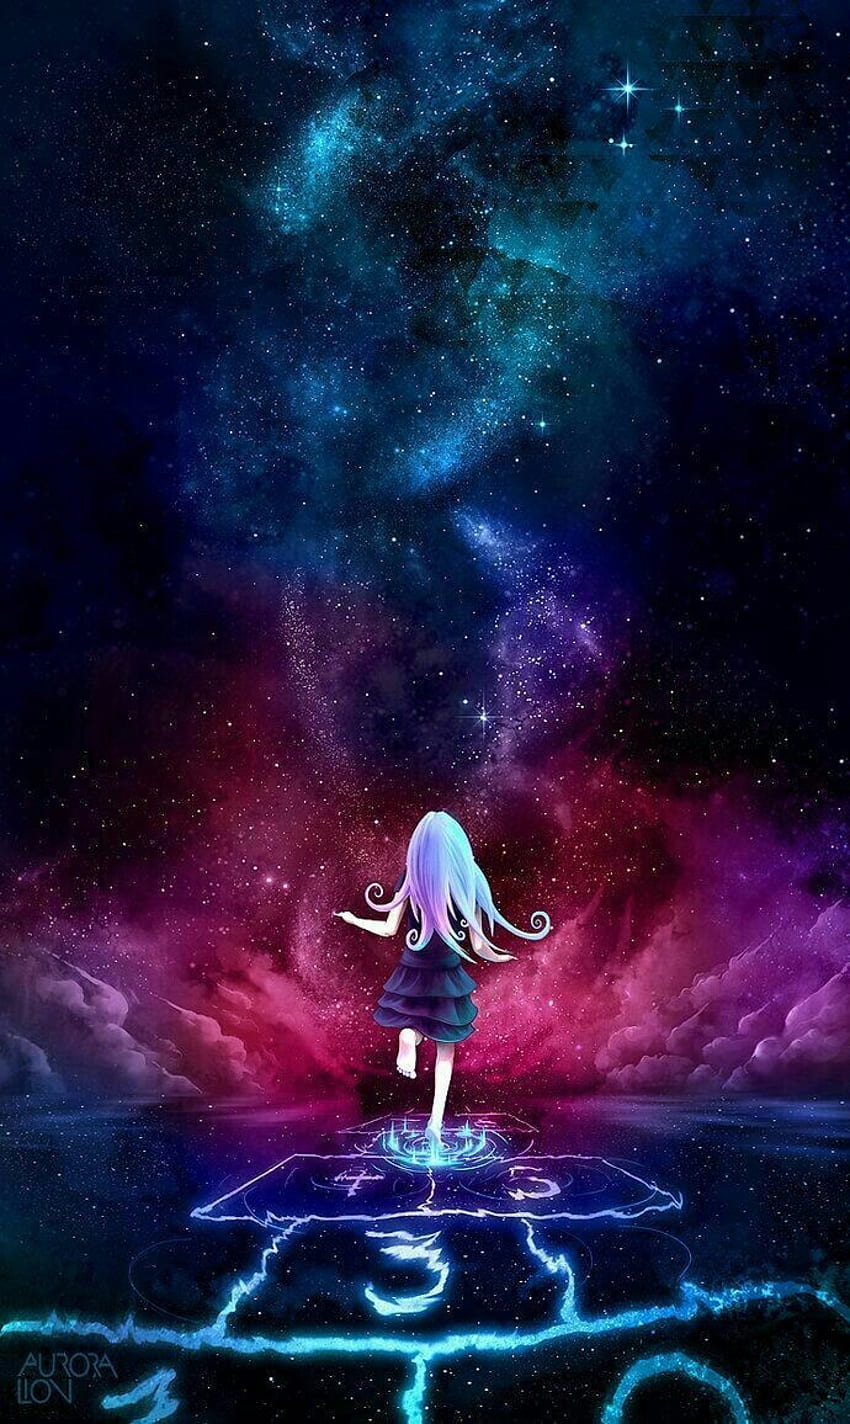 Bạn là fan của anime? Bạn yêu thích vũ trụ? Điểm hẹn của bạn đang chờ đón tại bộ ảnh Anime Girl Purple Galaxy đầy cuốn hút. Bạn sẽ không thể rời mắt khỏi hình ảnh này khiến bạn ngỡ ngàng và thích thú.